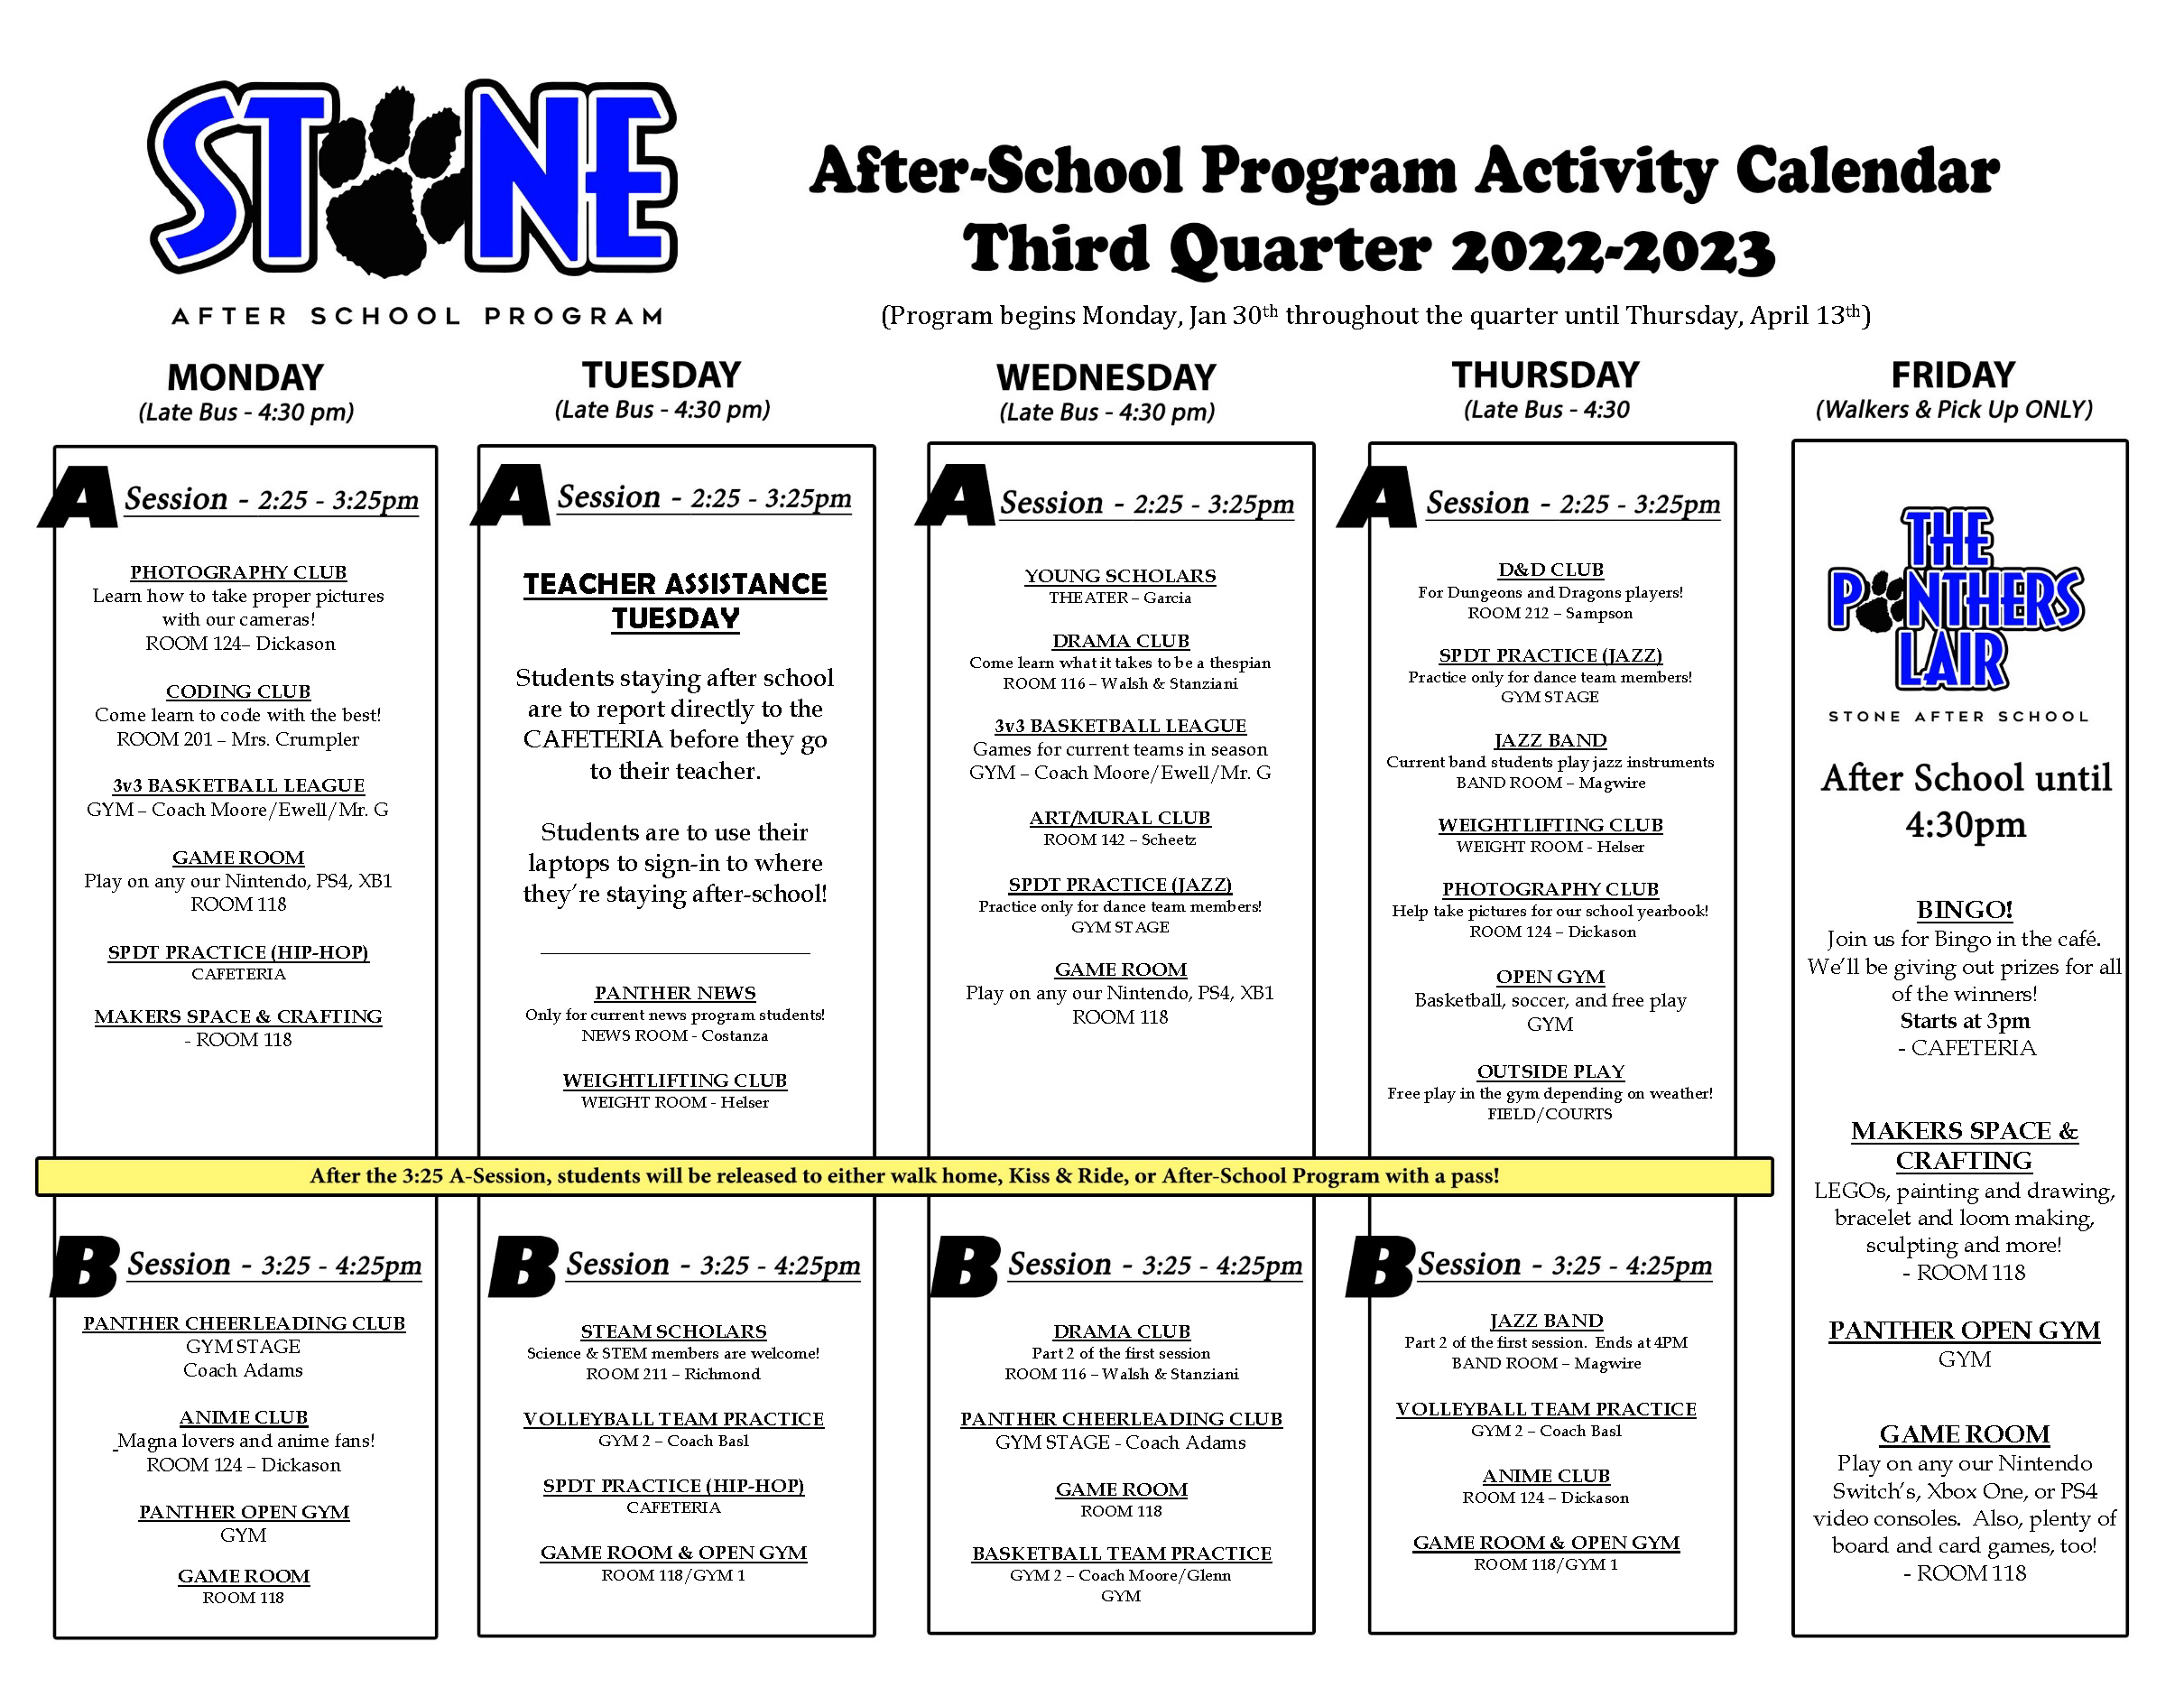 asp quarter 3 activity calendar 2223